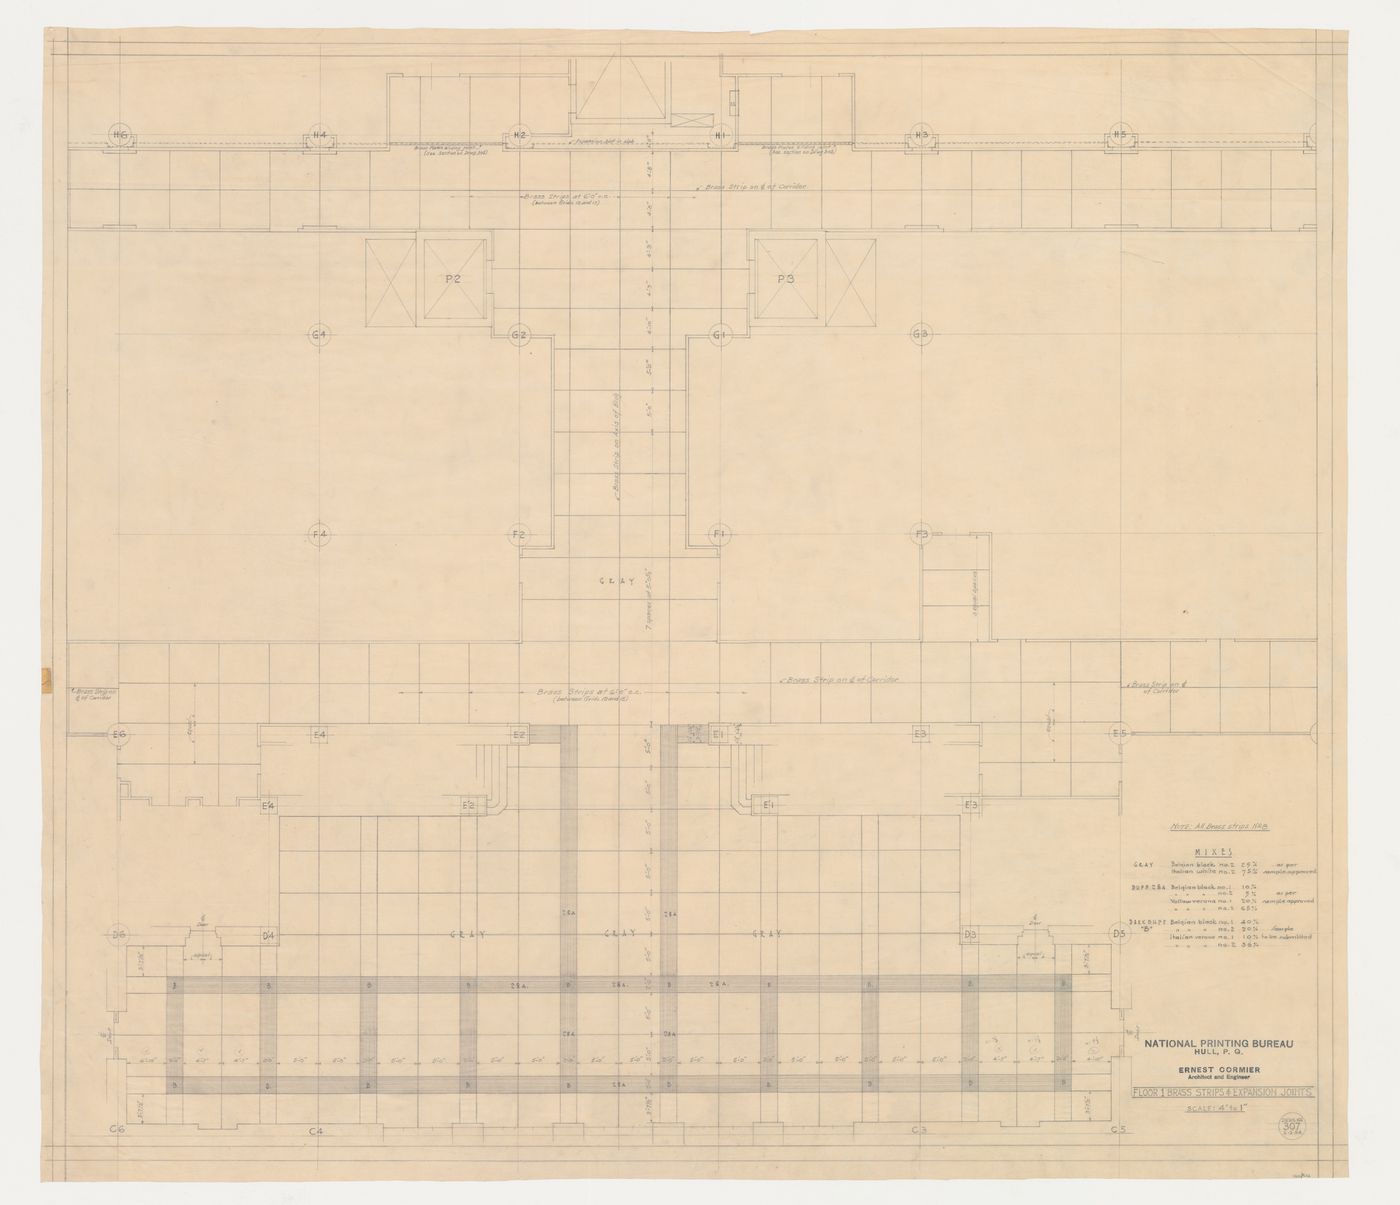 Plan du plancher de l'étage 1 : bandes de laiton et joints de dilatation, Imprimerie Nationale du Canada, Hull, Québec, Canada